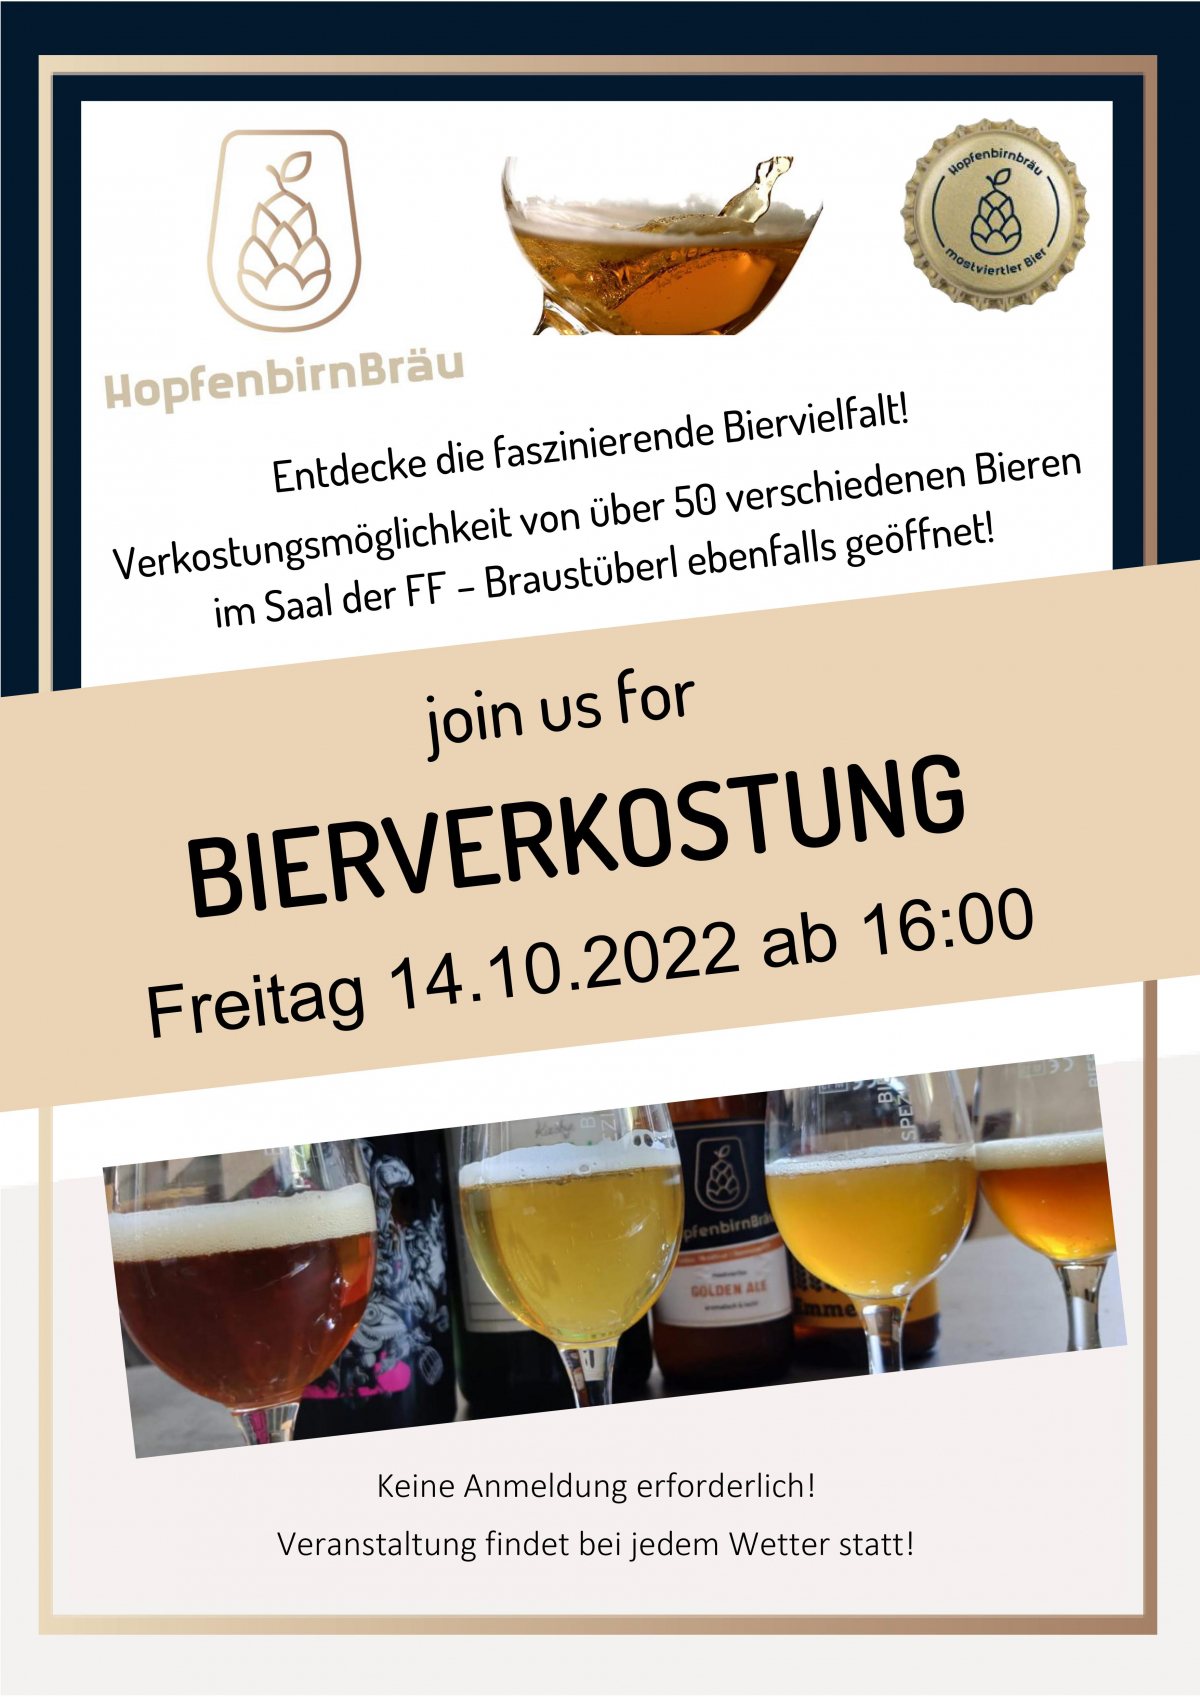 öffentliche Bierverkostung am 14.10.2022